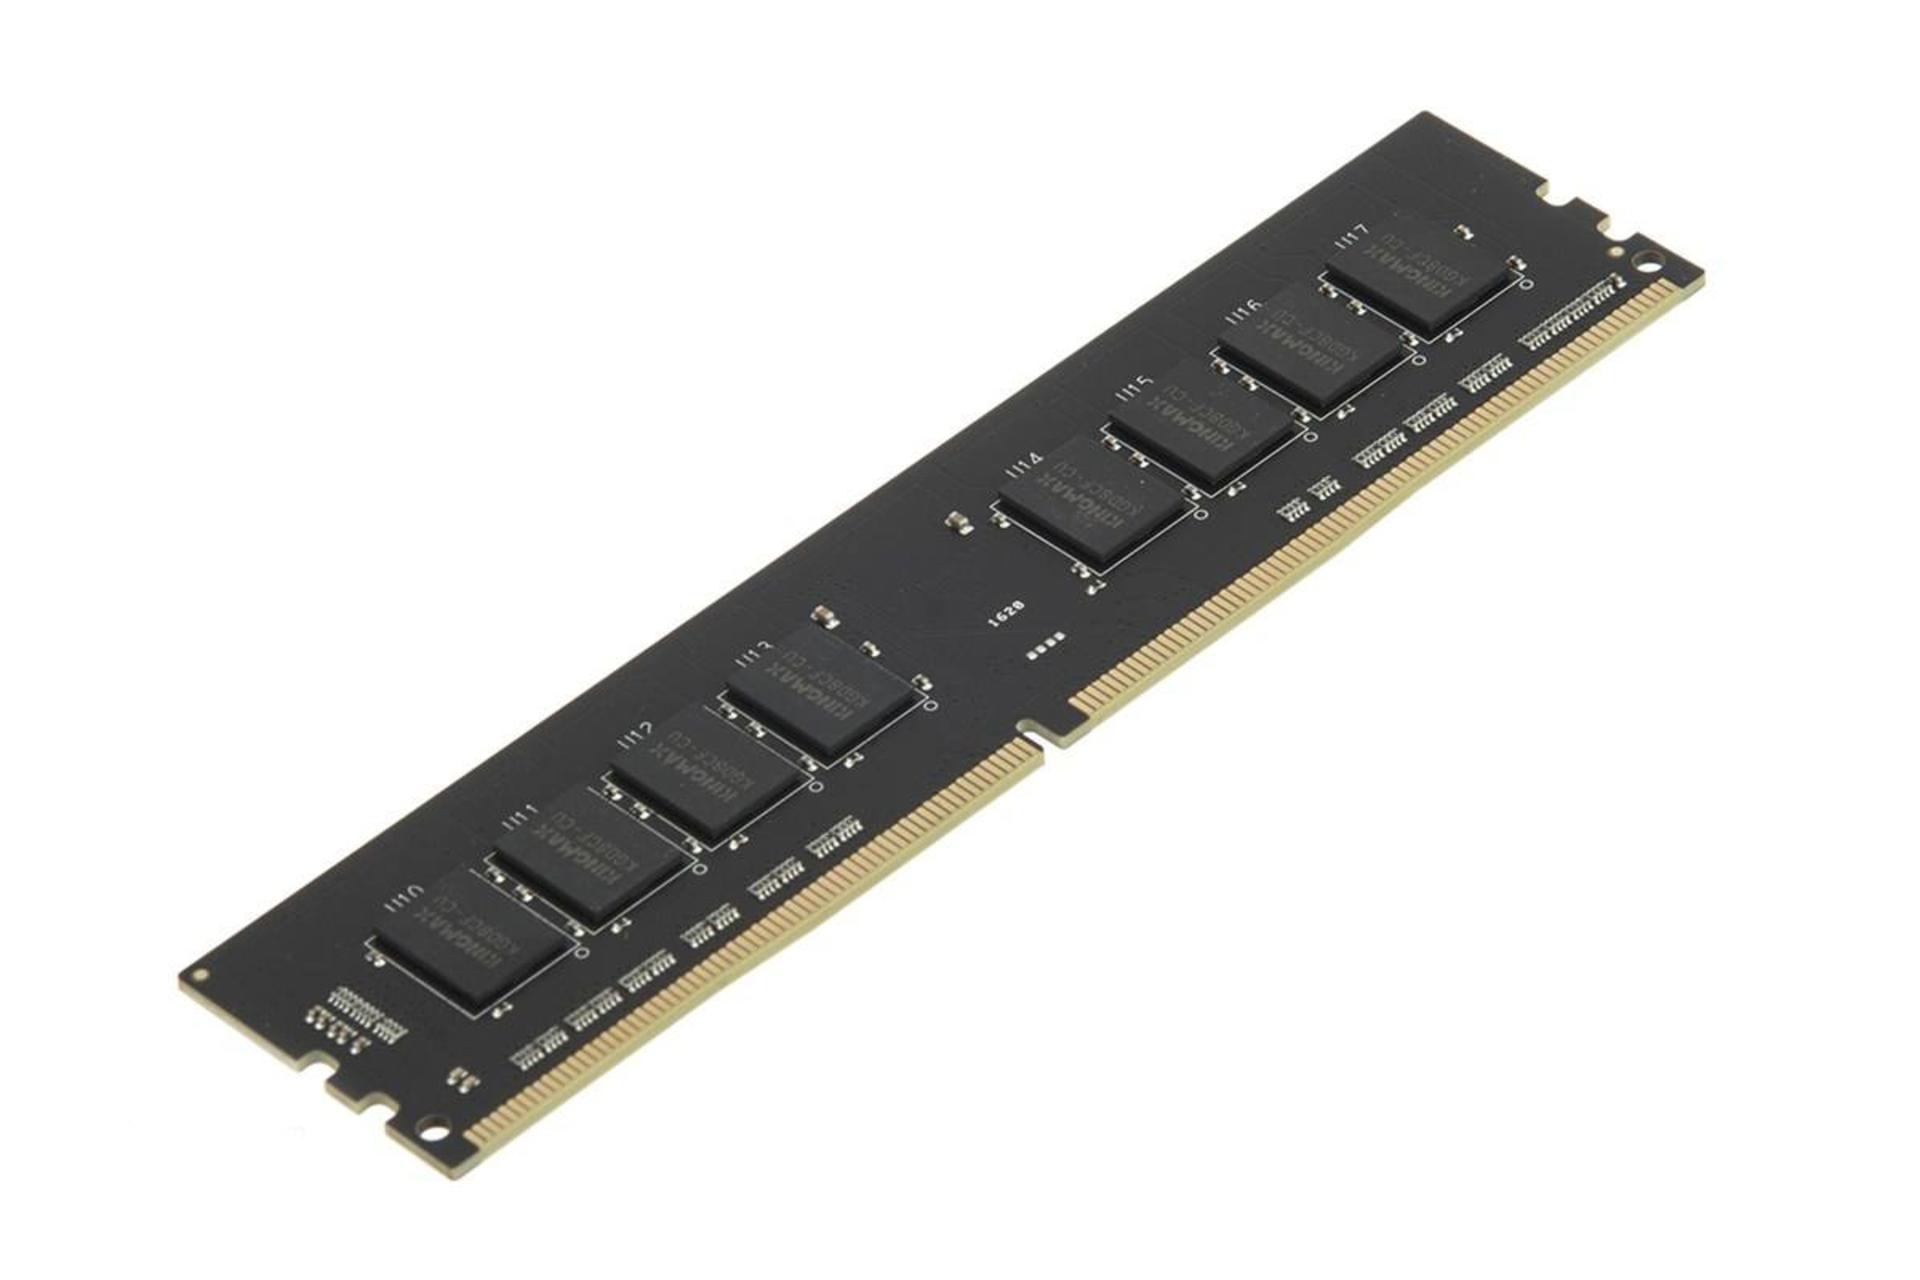 نمای کنار رم کینگ مکس دسکتاپ ظرفیت 16 گیگابایت از نوع DDR4-2400